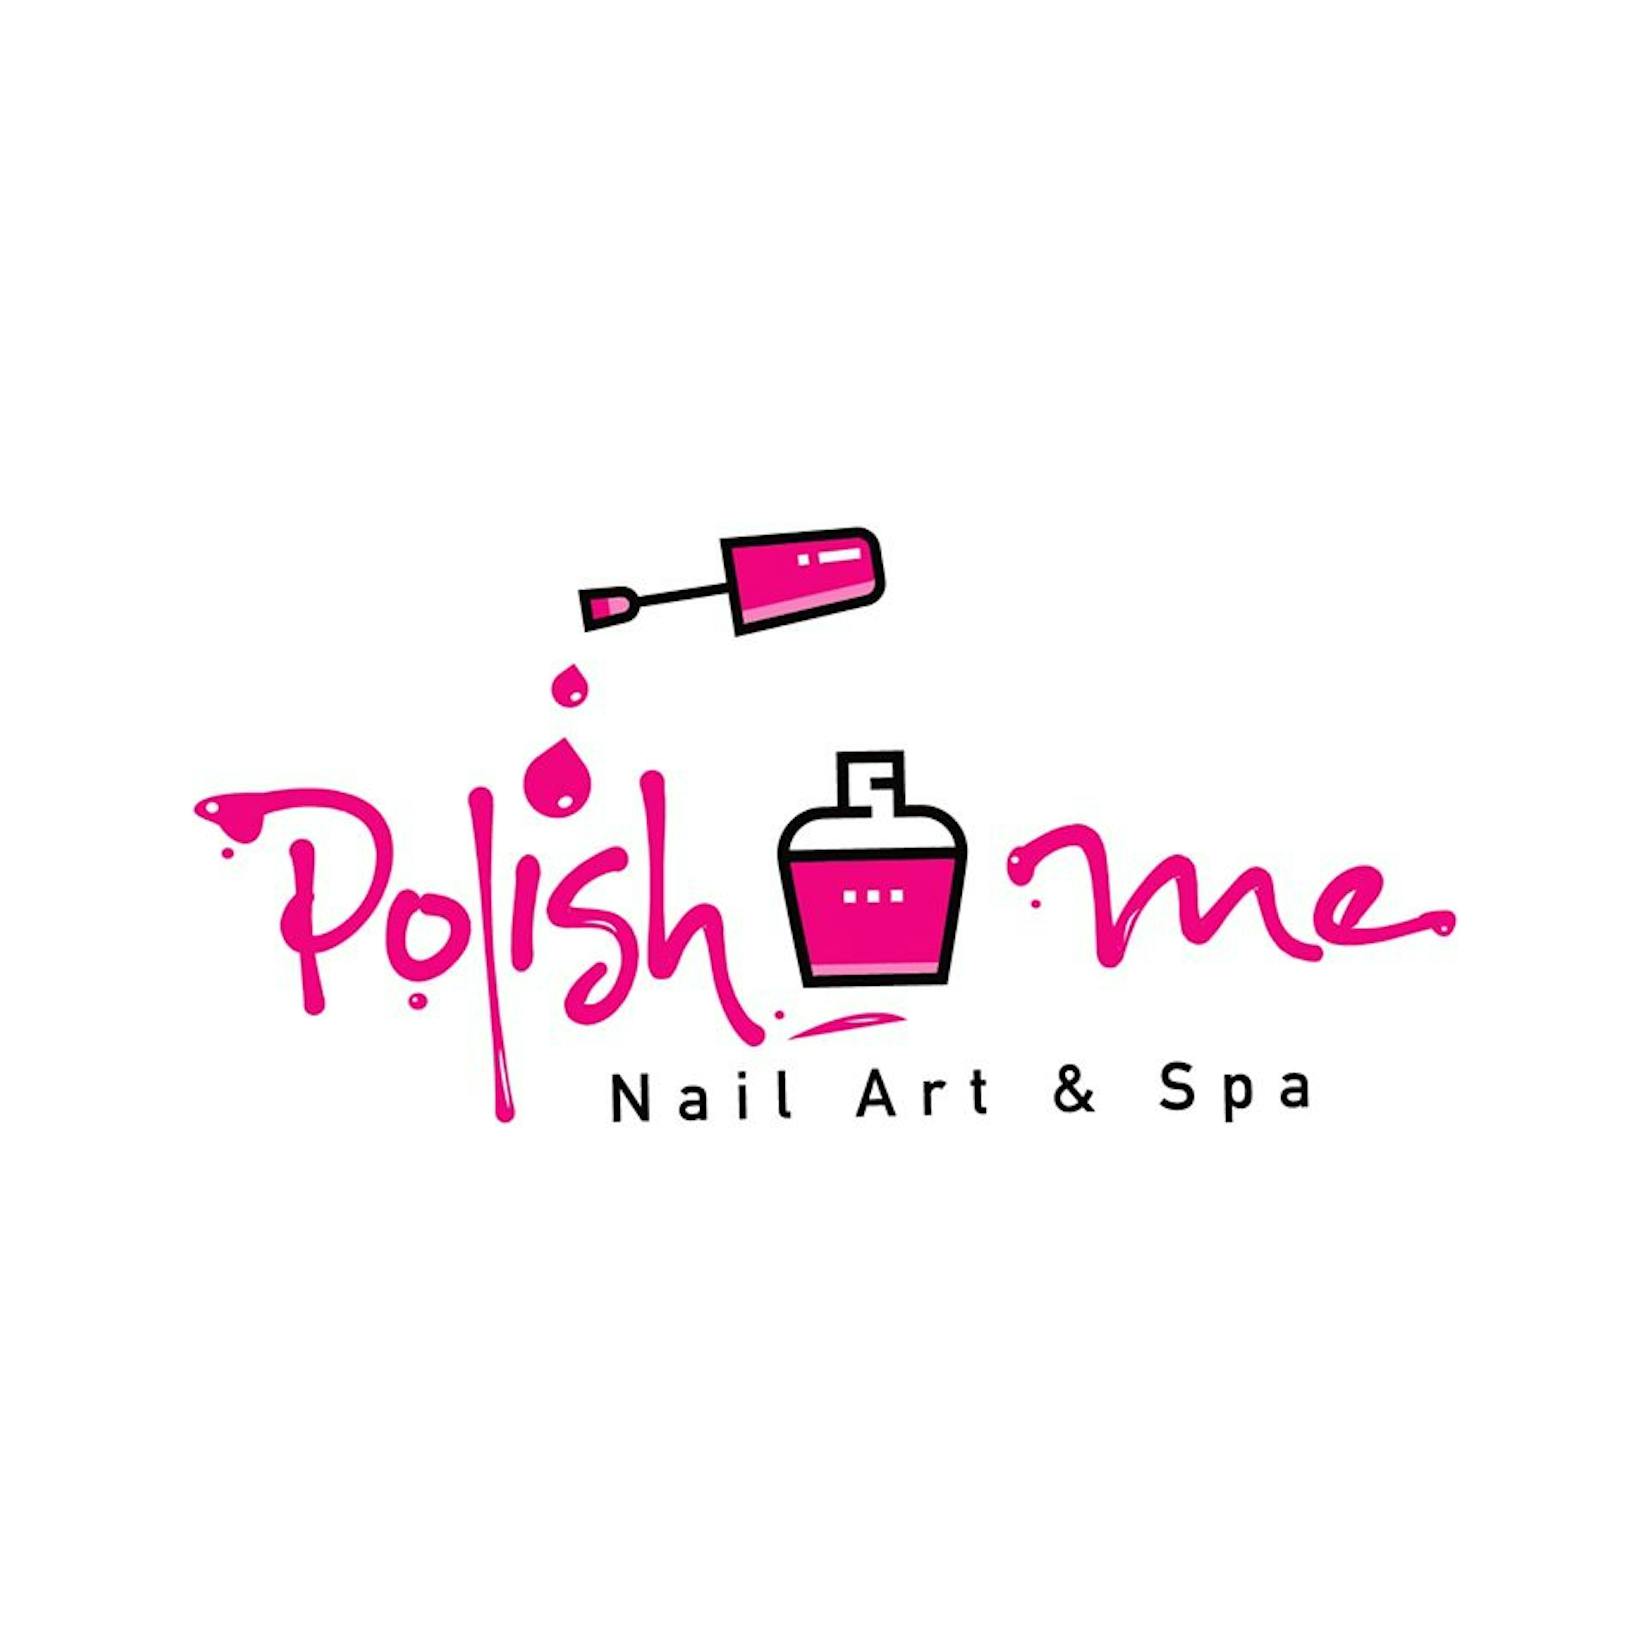 Polish me - Nail Art & Spa | Beauty